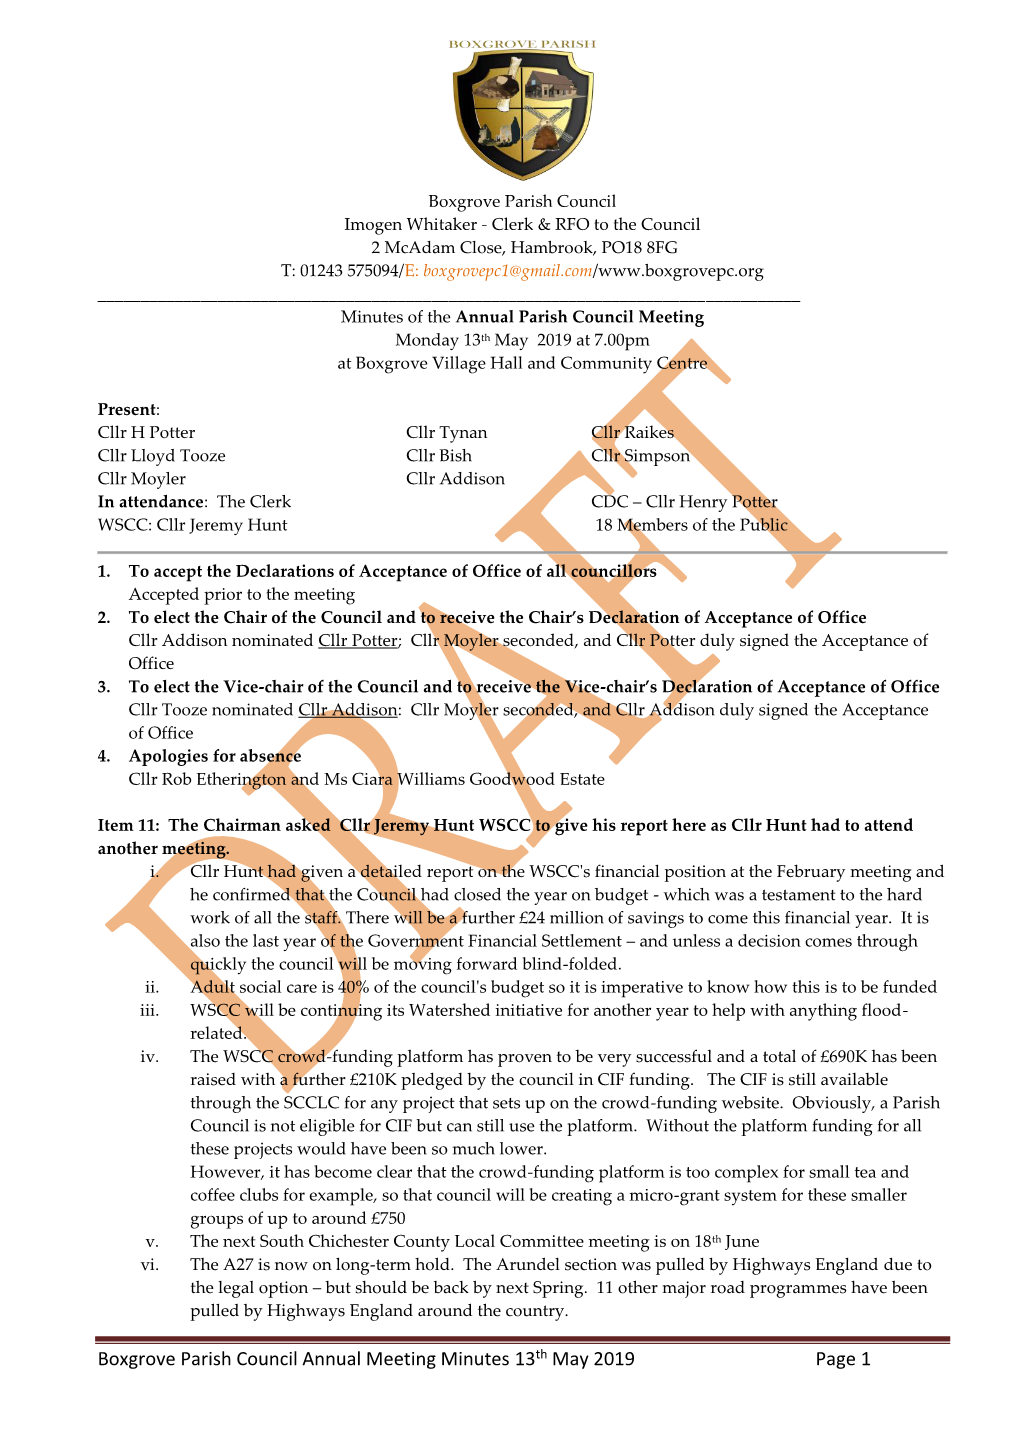 Boxgrove Parish Council Minutes